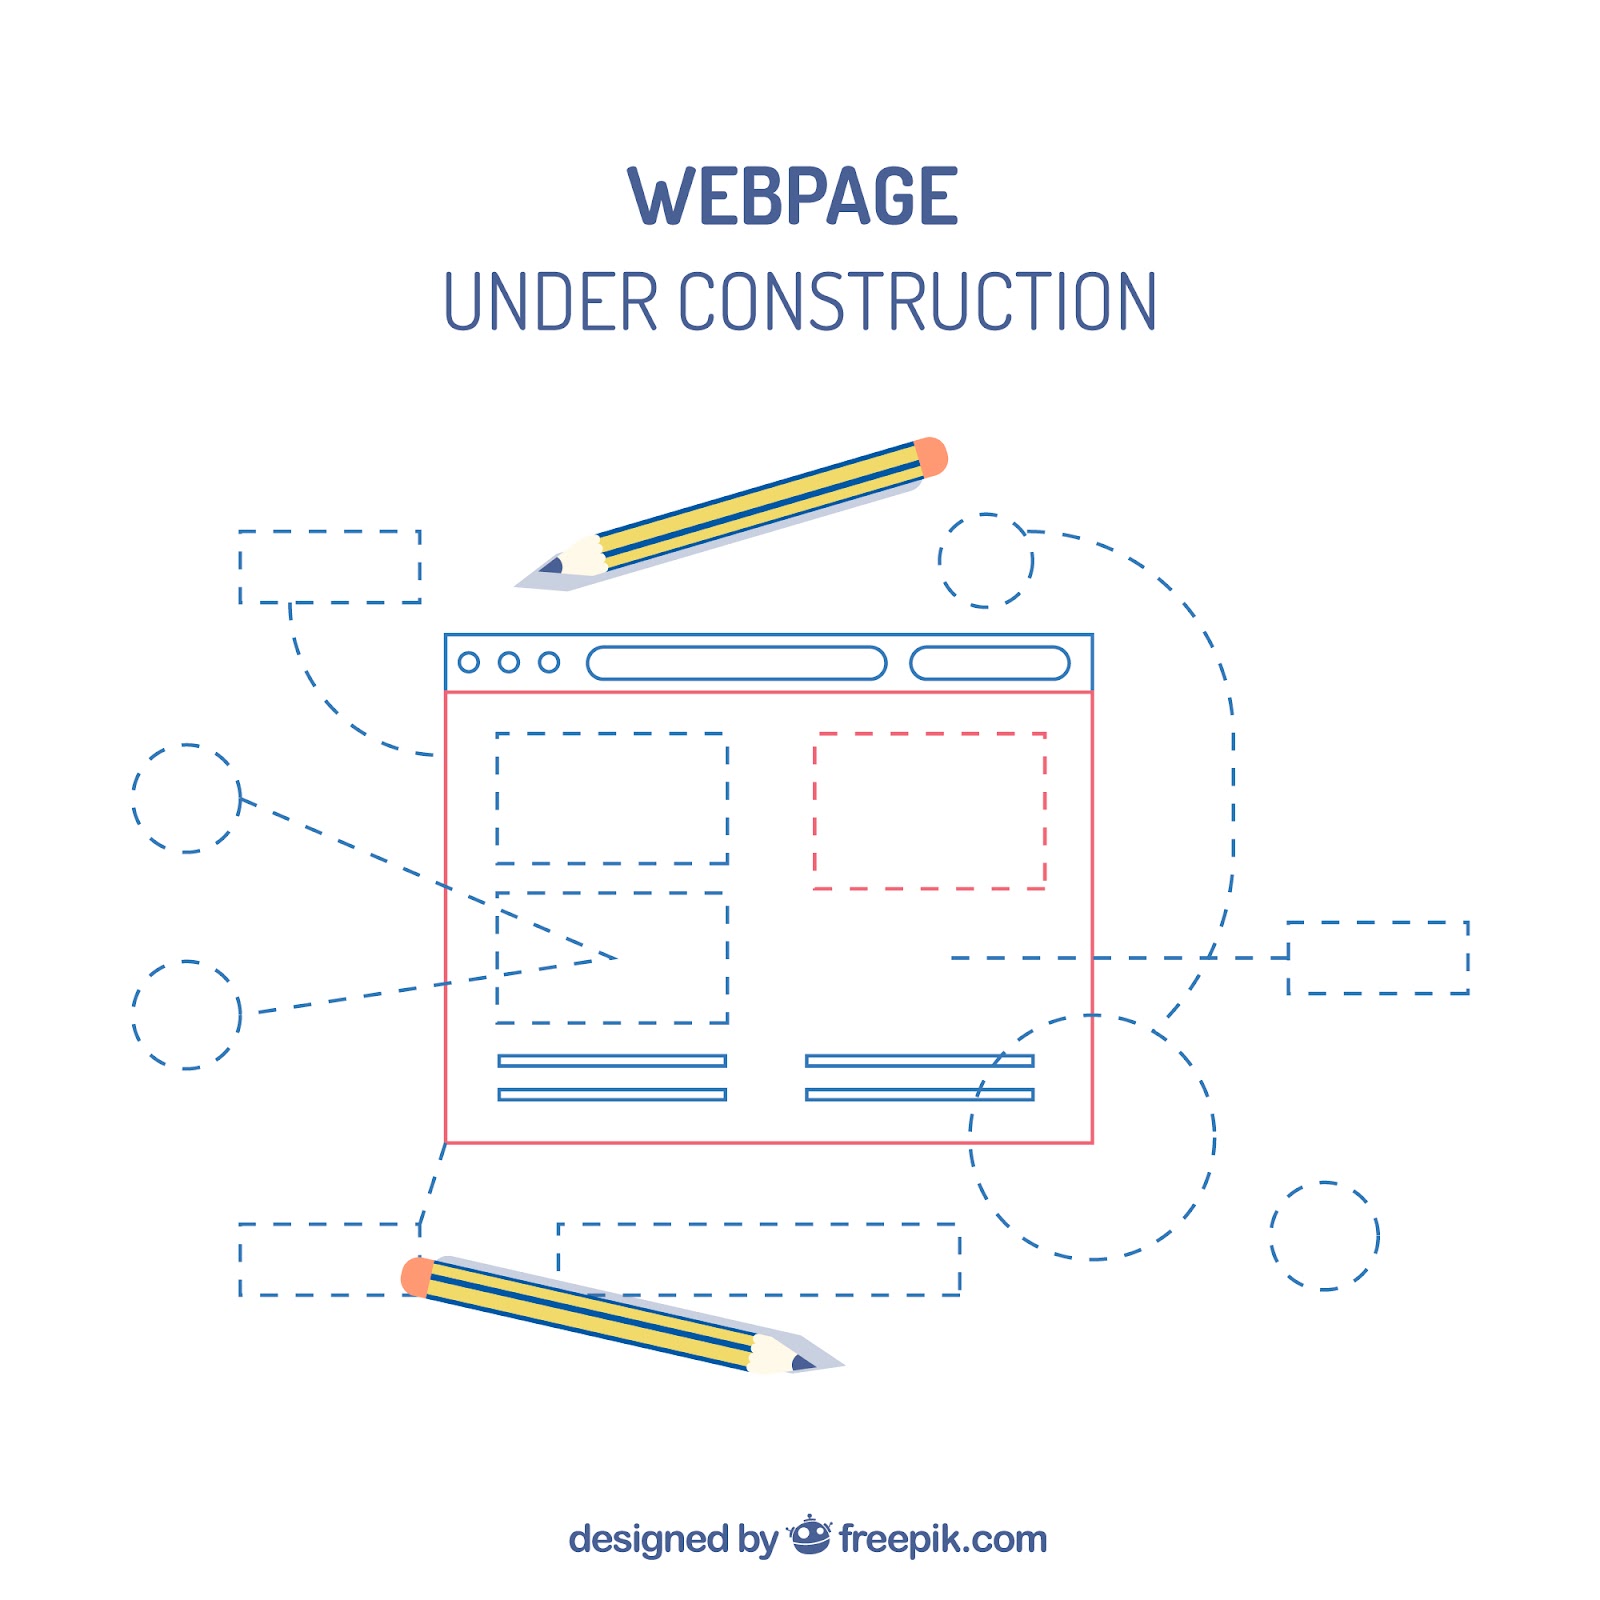 An under construction web design